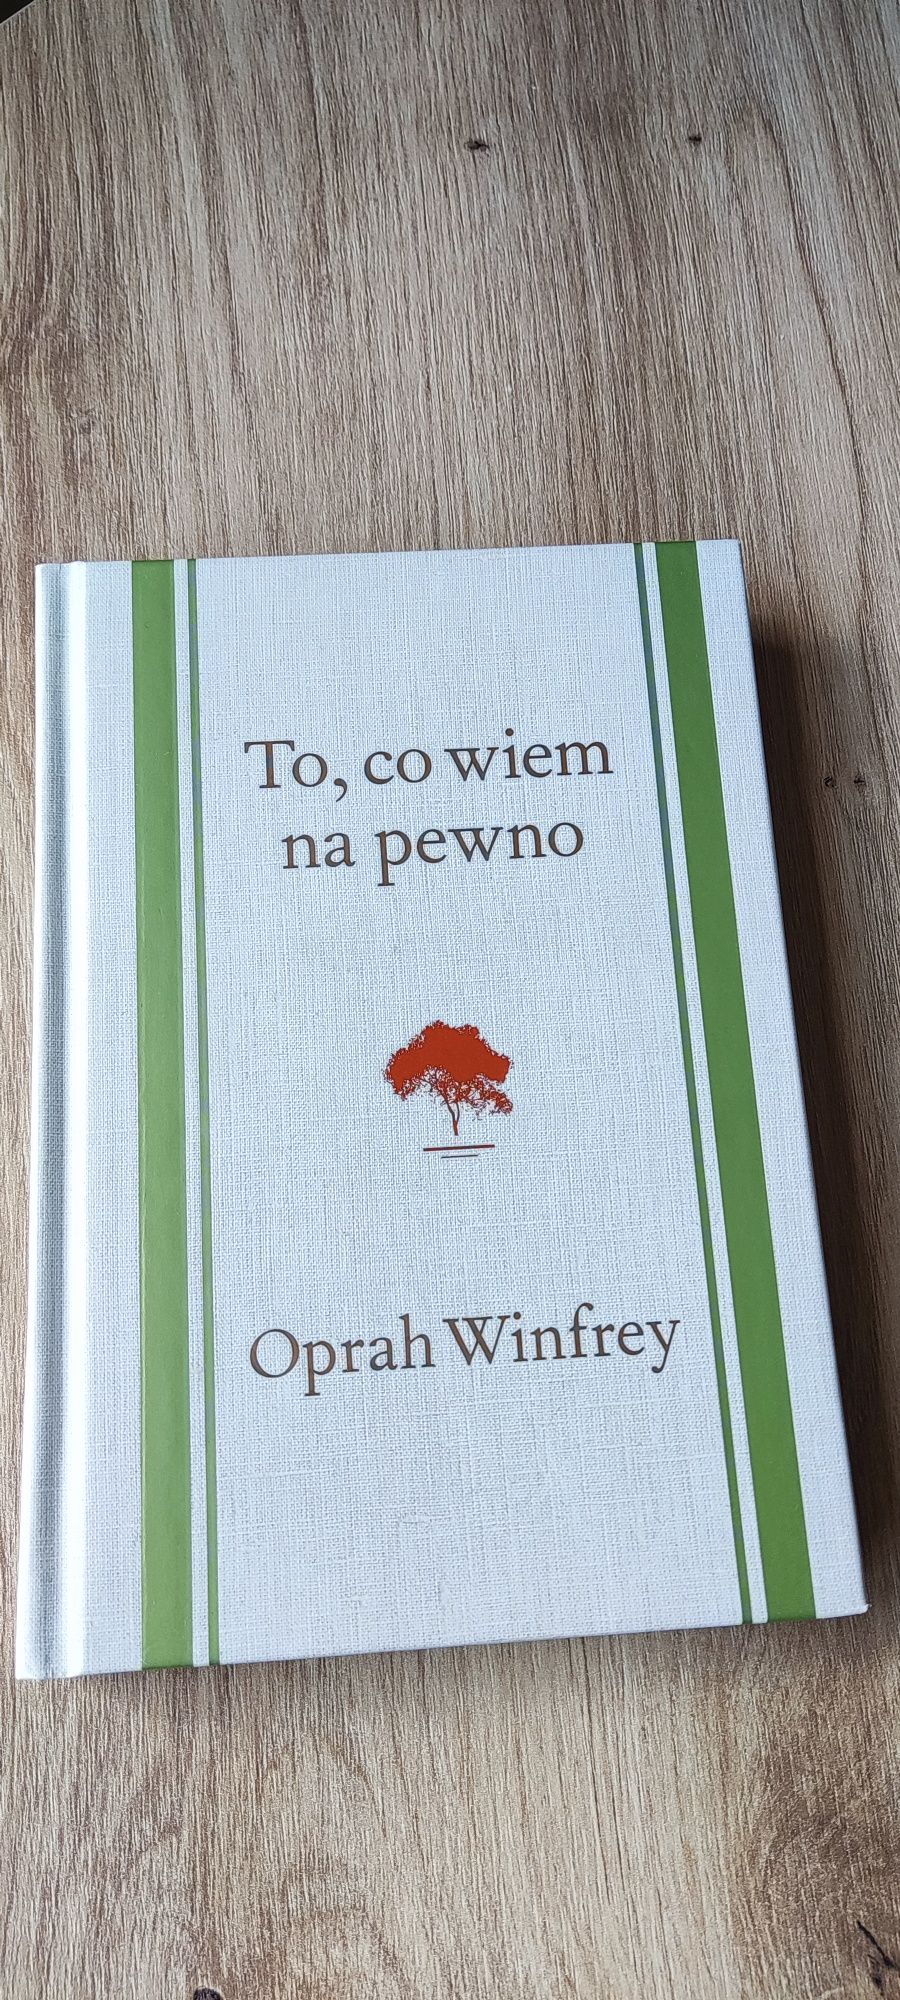 To co wiem na pewno Oprah Winfrey